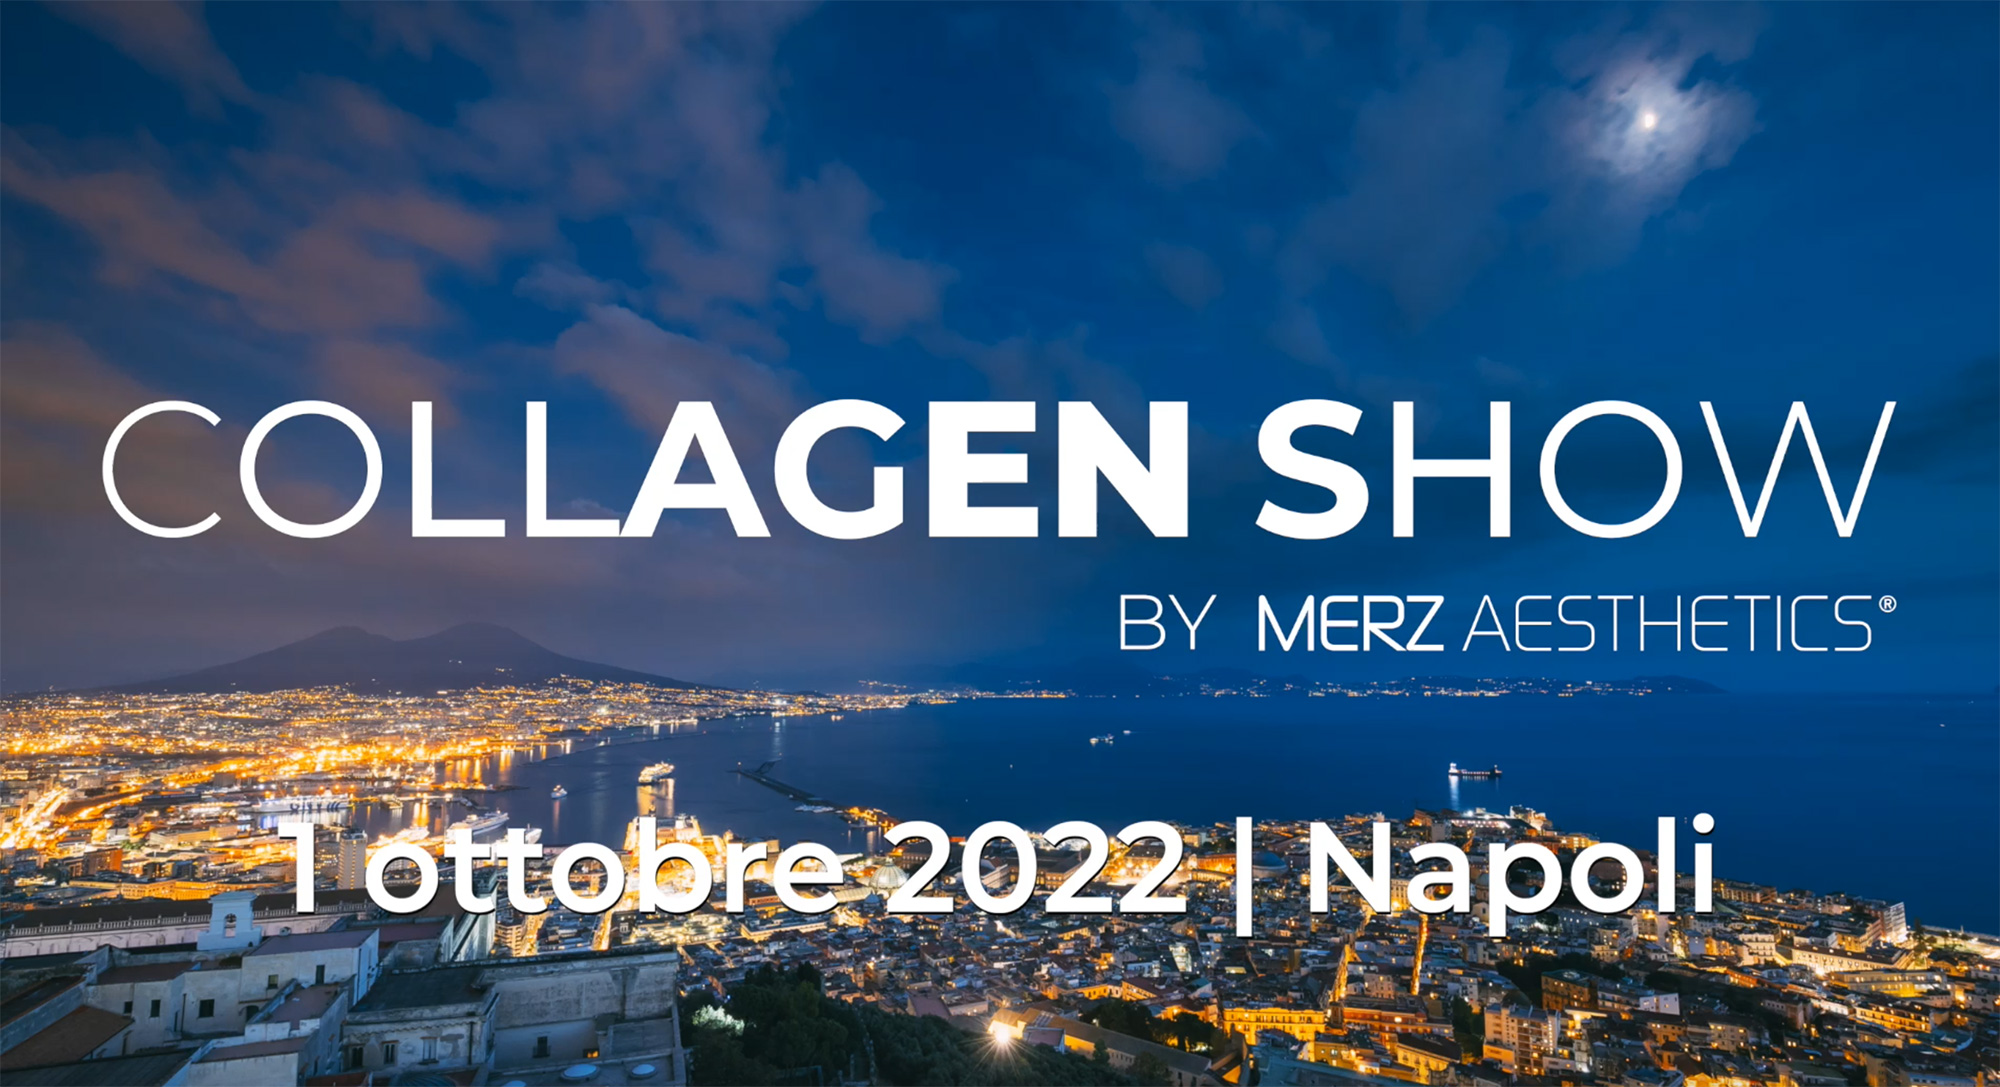 Collagen Show 2022